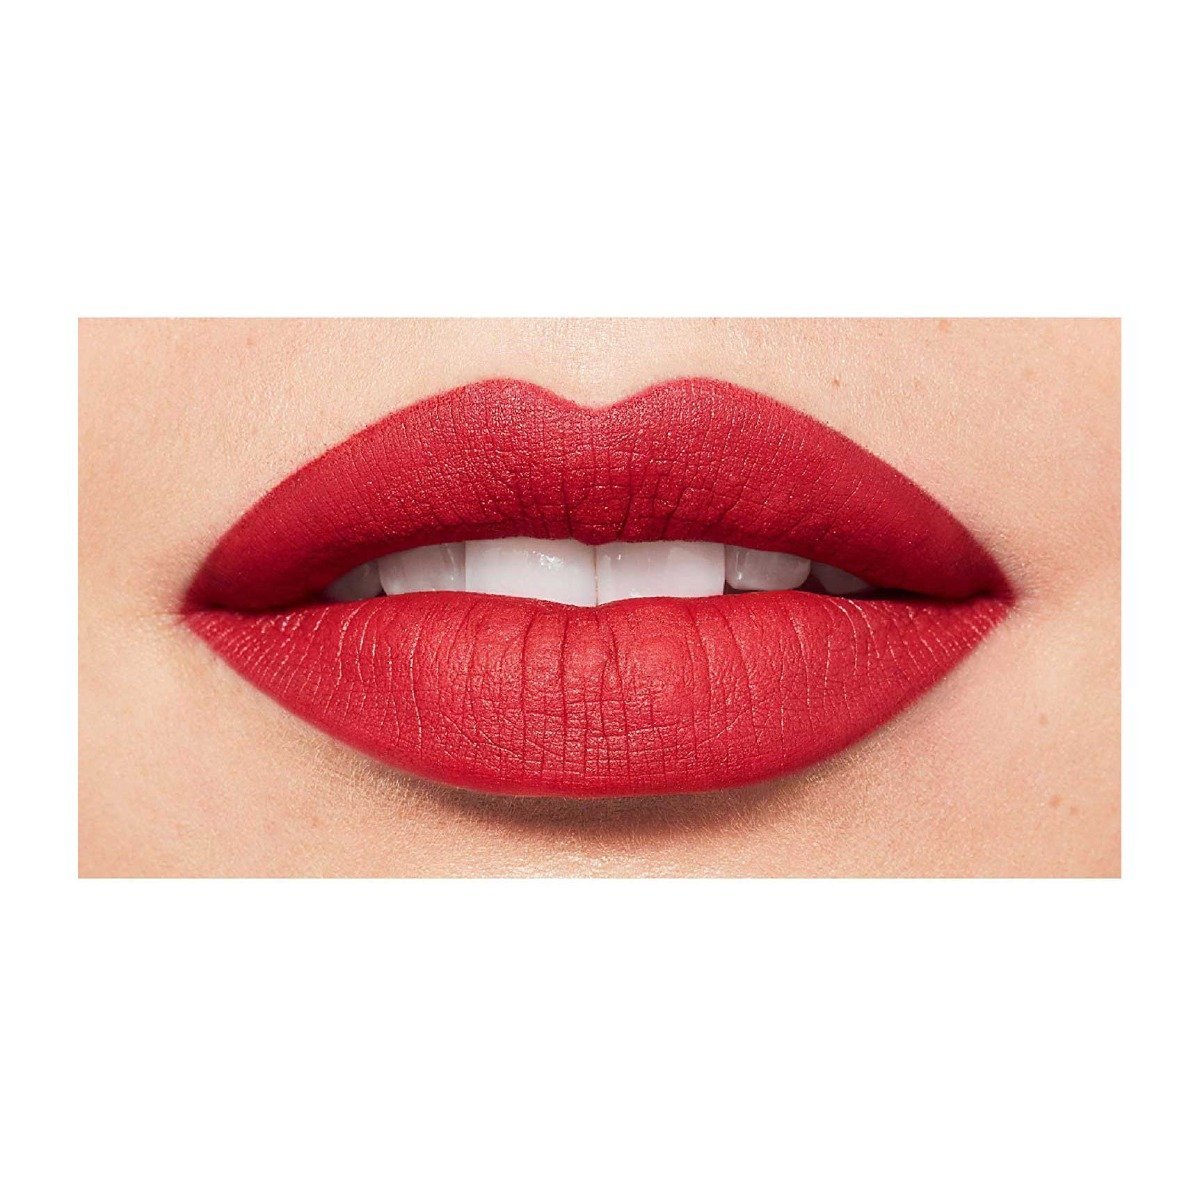 Bourjois Rouge Edition Velvet Lipstick - Bloom Pharmacy